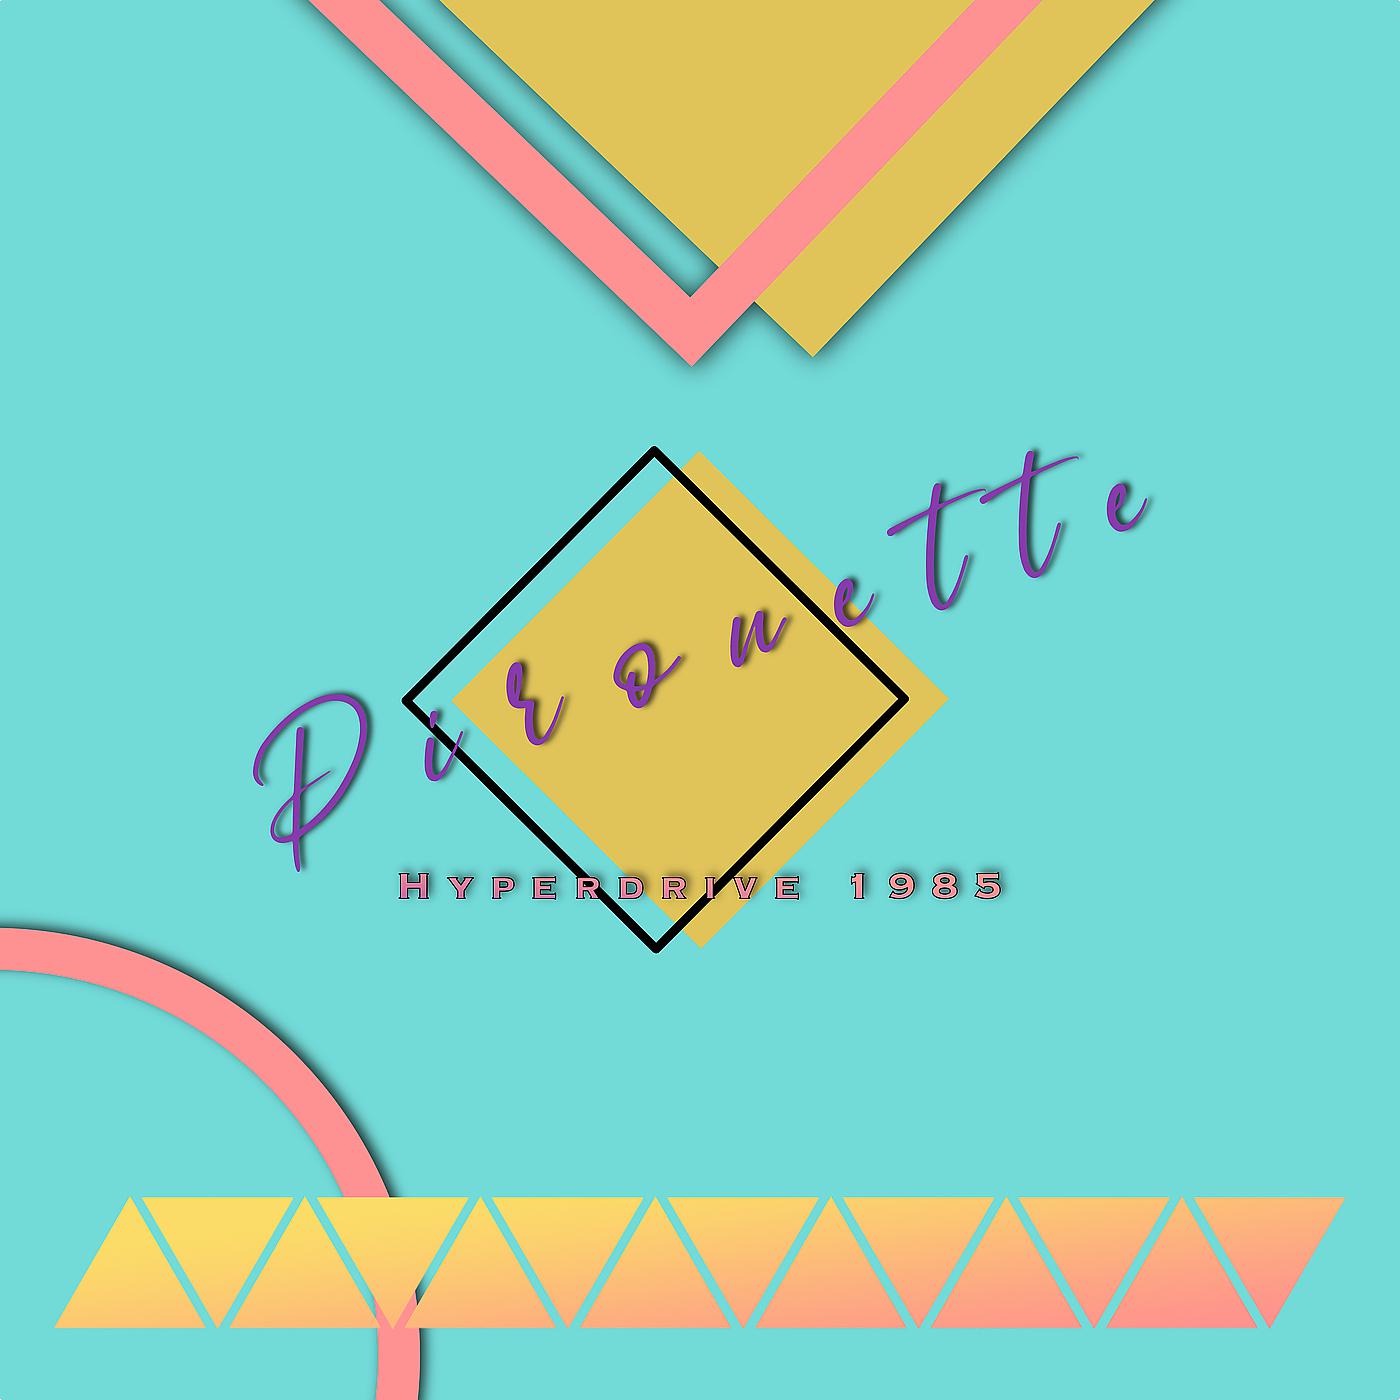 Постер альбома Pirouette